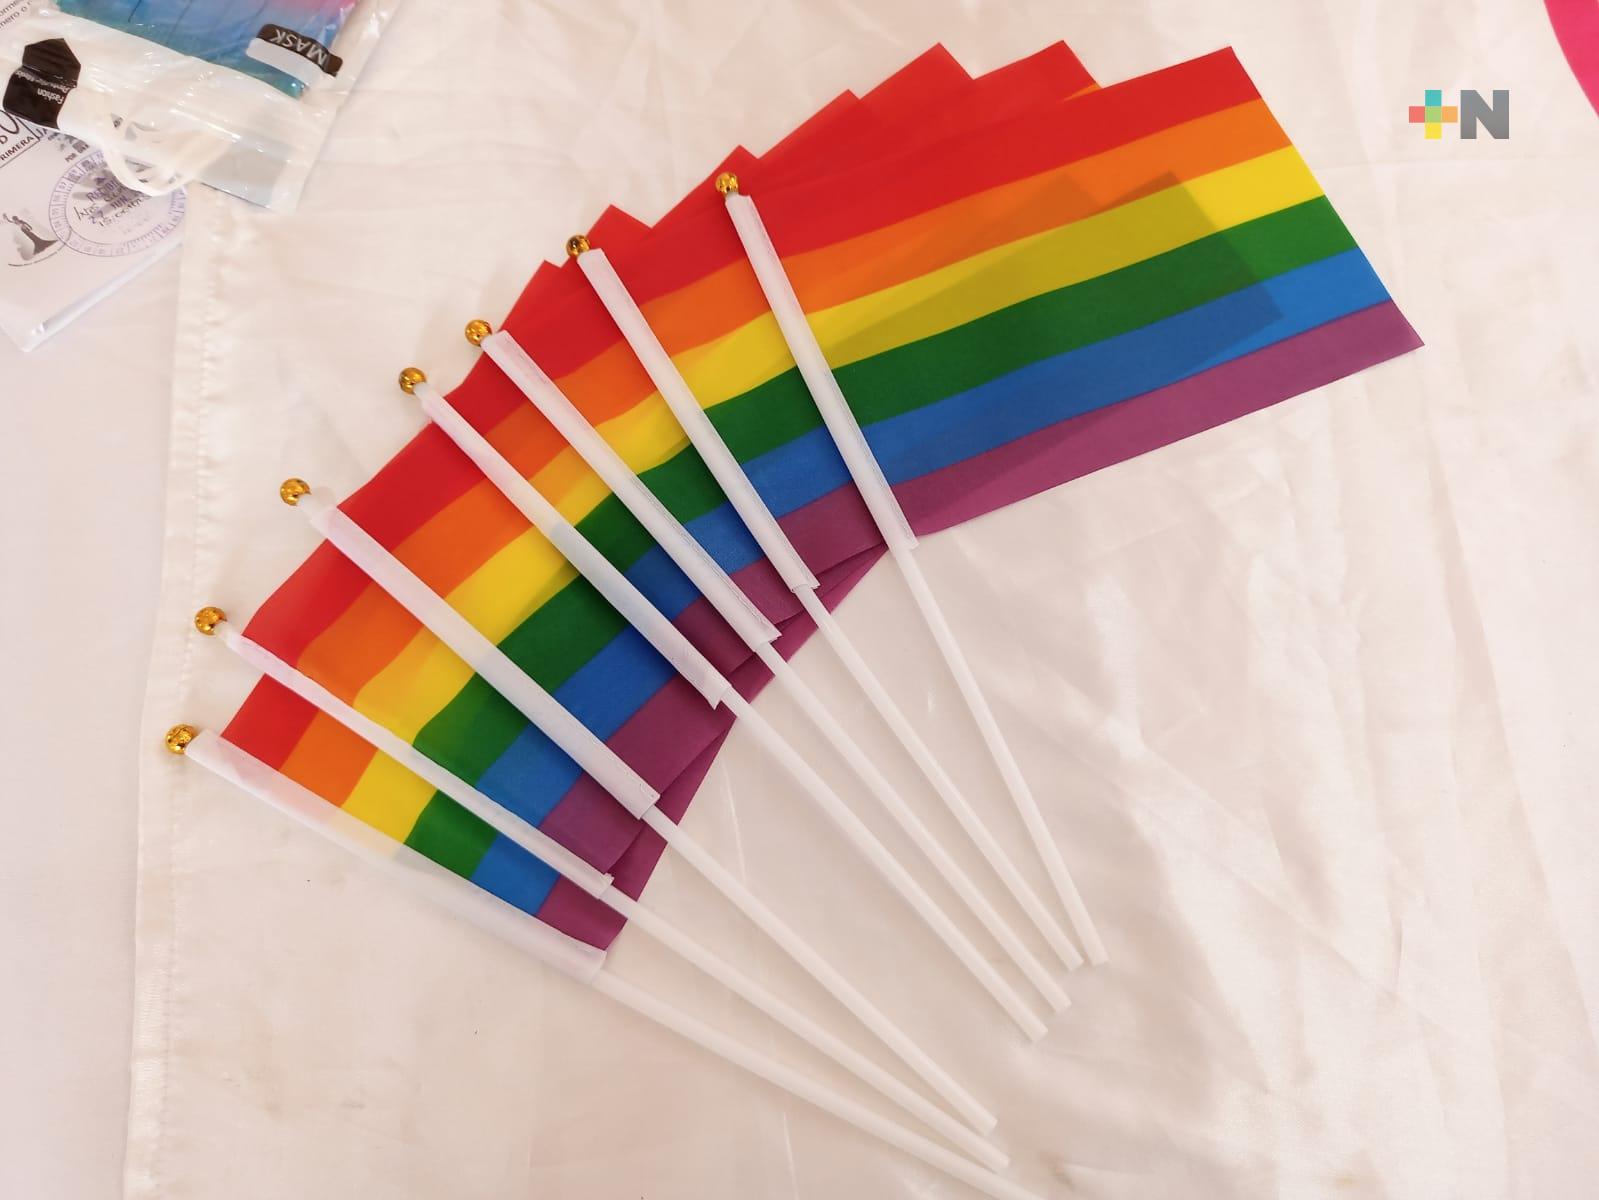 Buscan integrantes LGBTTTIQ+, se establezca dirección municipal de diversidad sexual